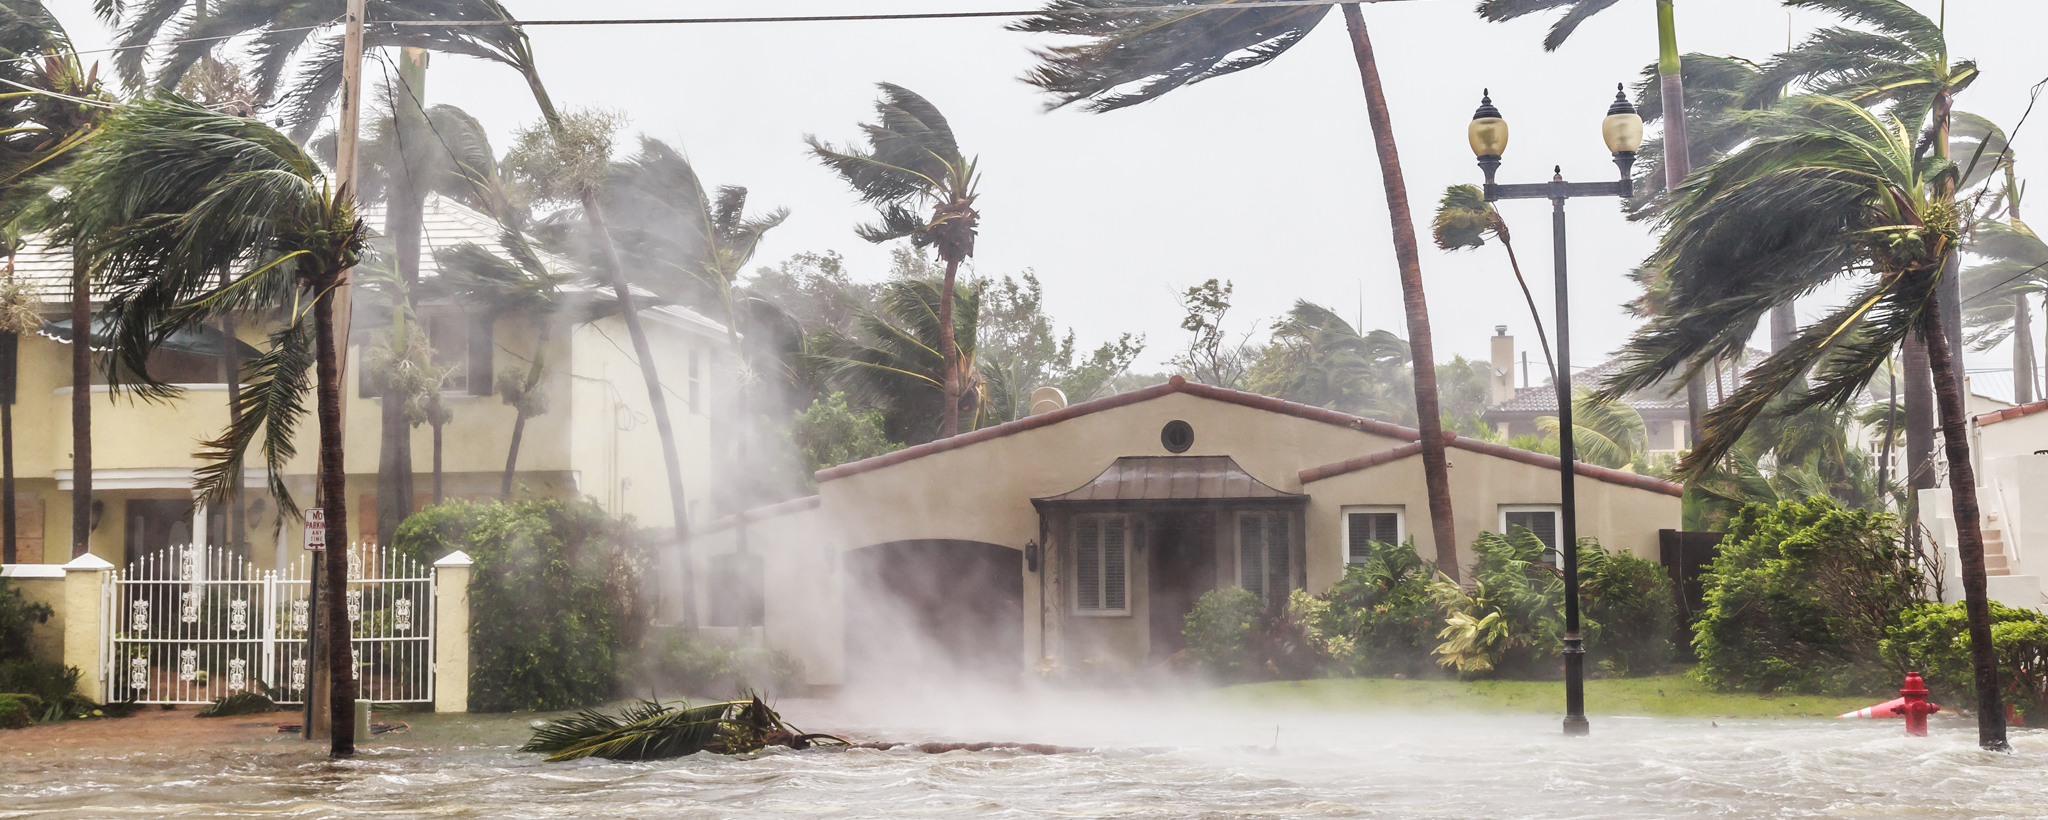 una casa durante un huracán, el agua inunda la calle y los árboles se balancean bruscamente con el viento.